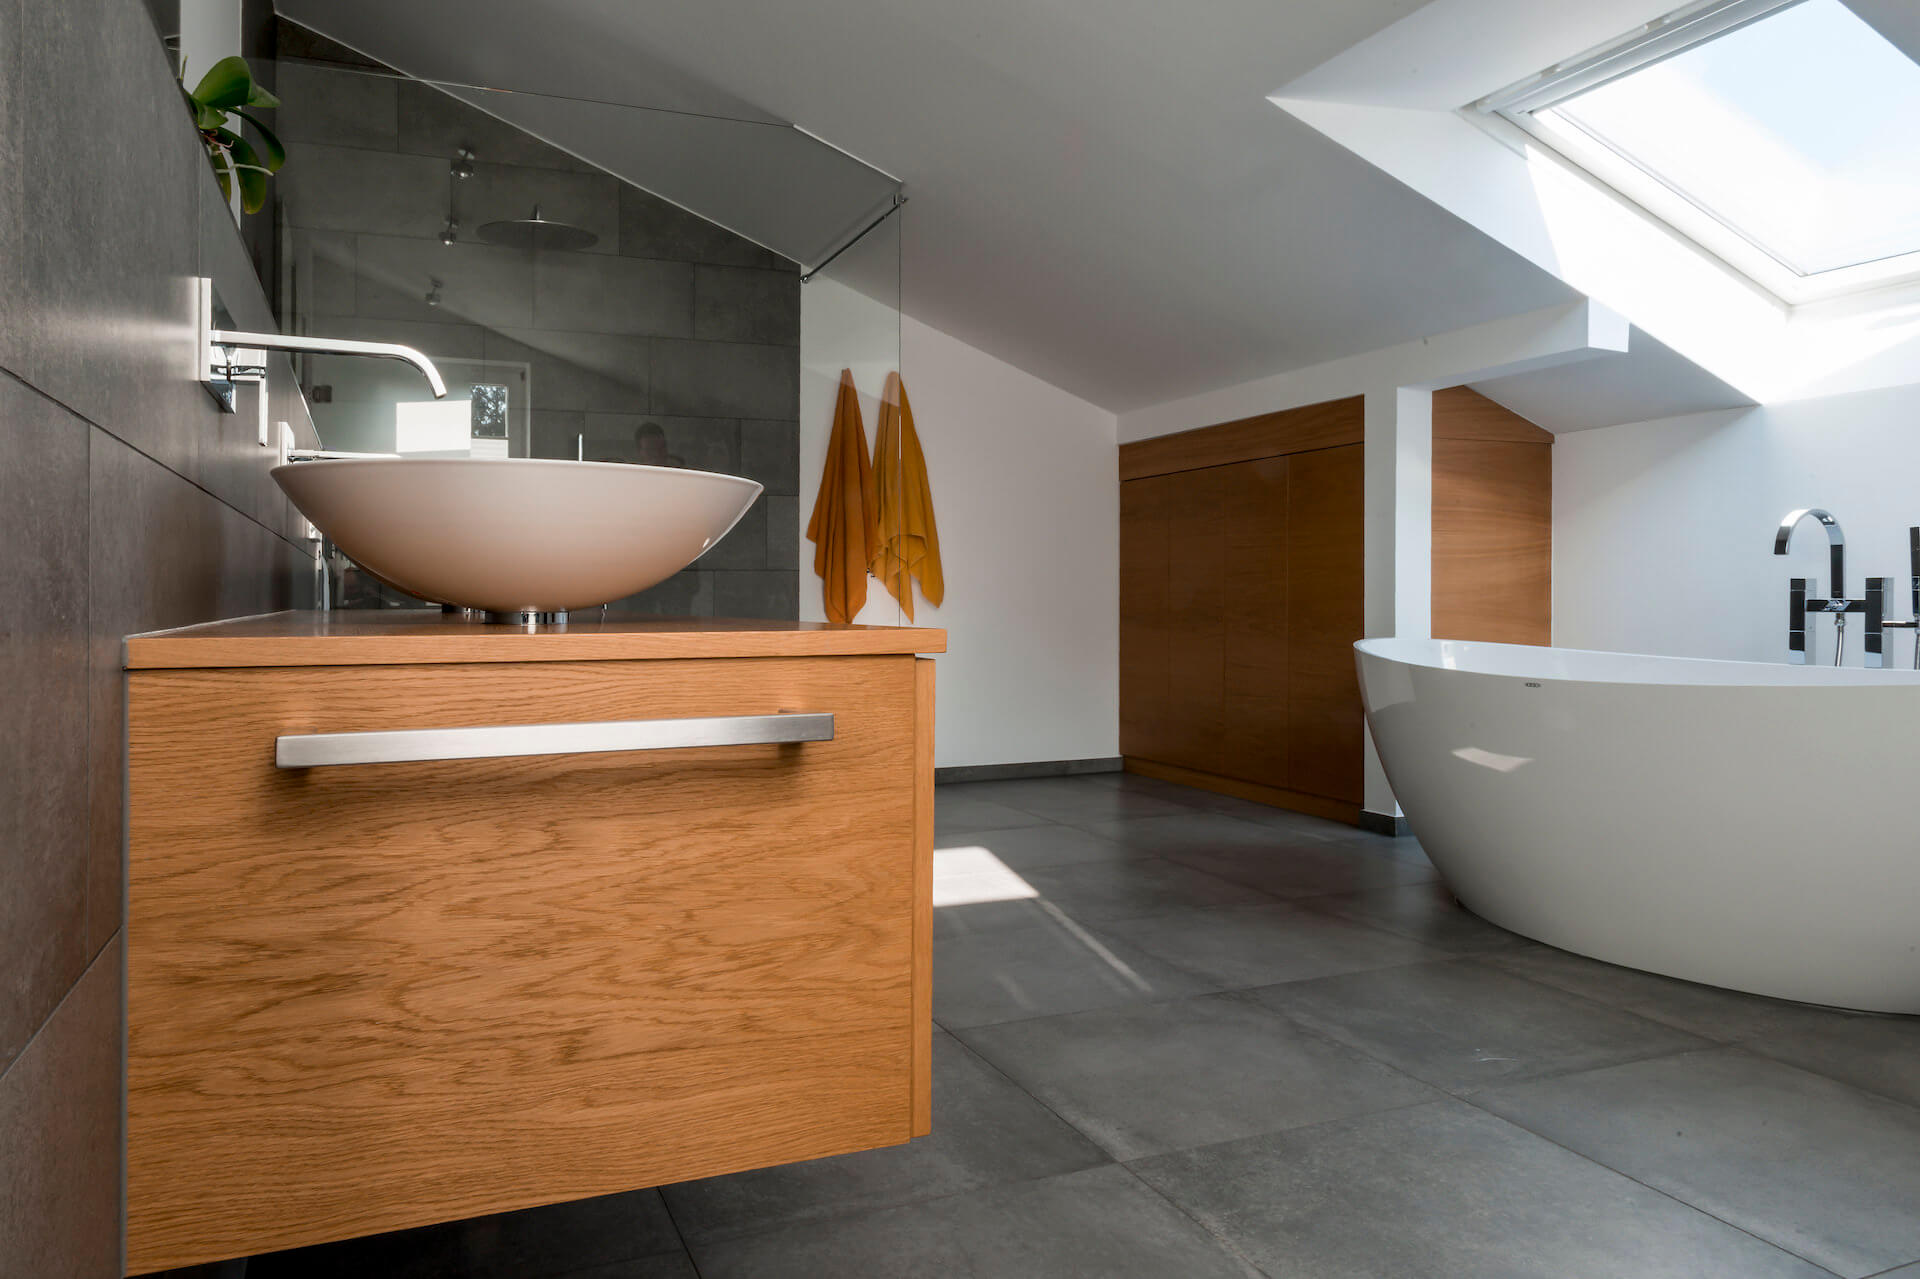 Bad in Eiche Natur mit durchlaufender Maserung mit eleganter Stauraum-Nutzung im Dachgeschoss.